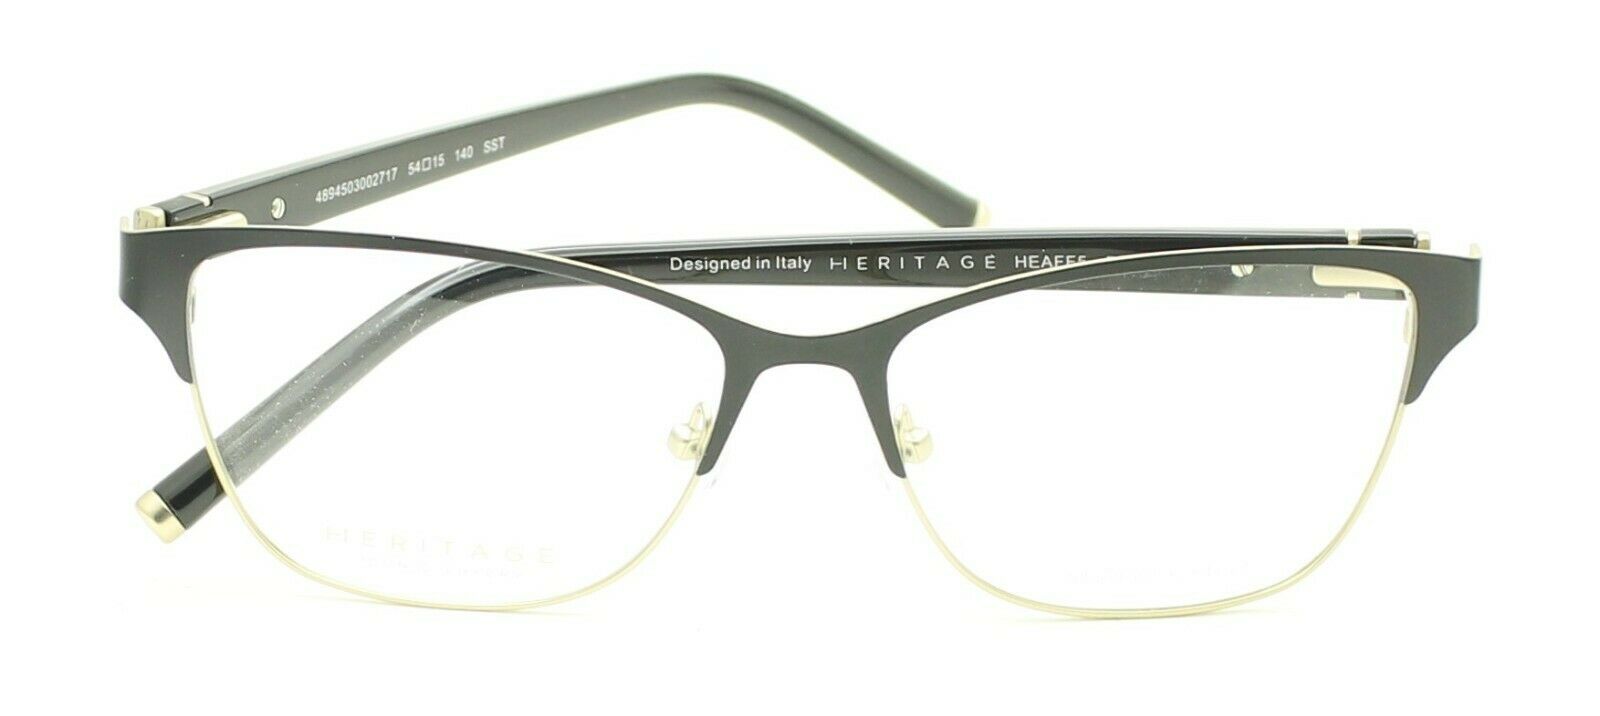 HERITAGE Iconic Luxury HEAFF5 BD Eyewear FRAMES Eyeglasses RX Optical Glasses